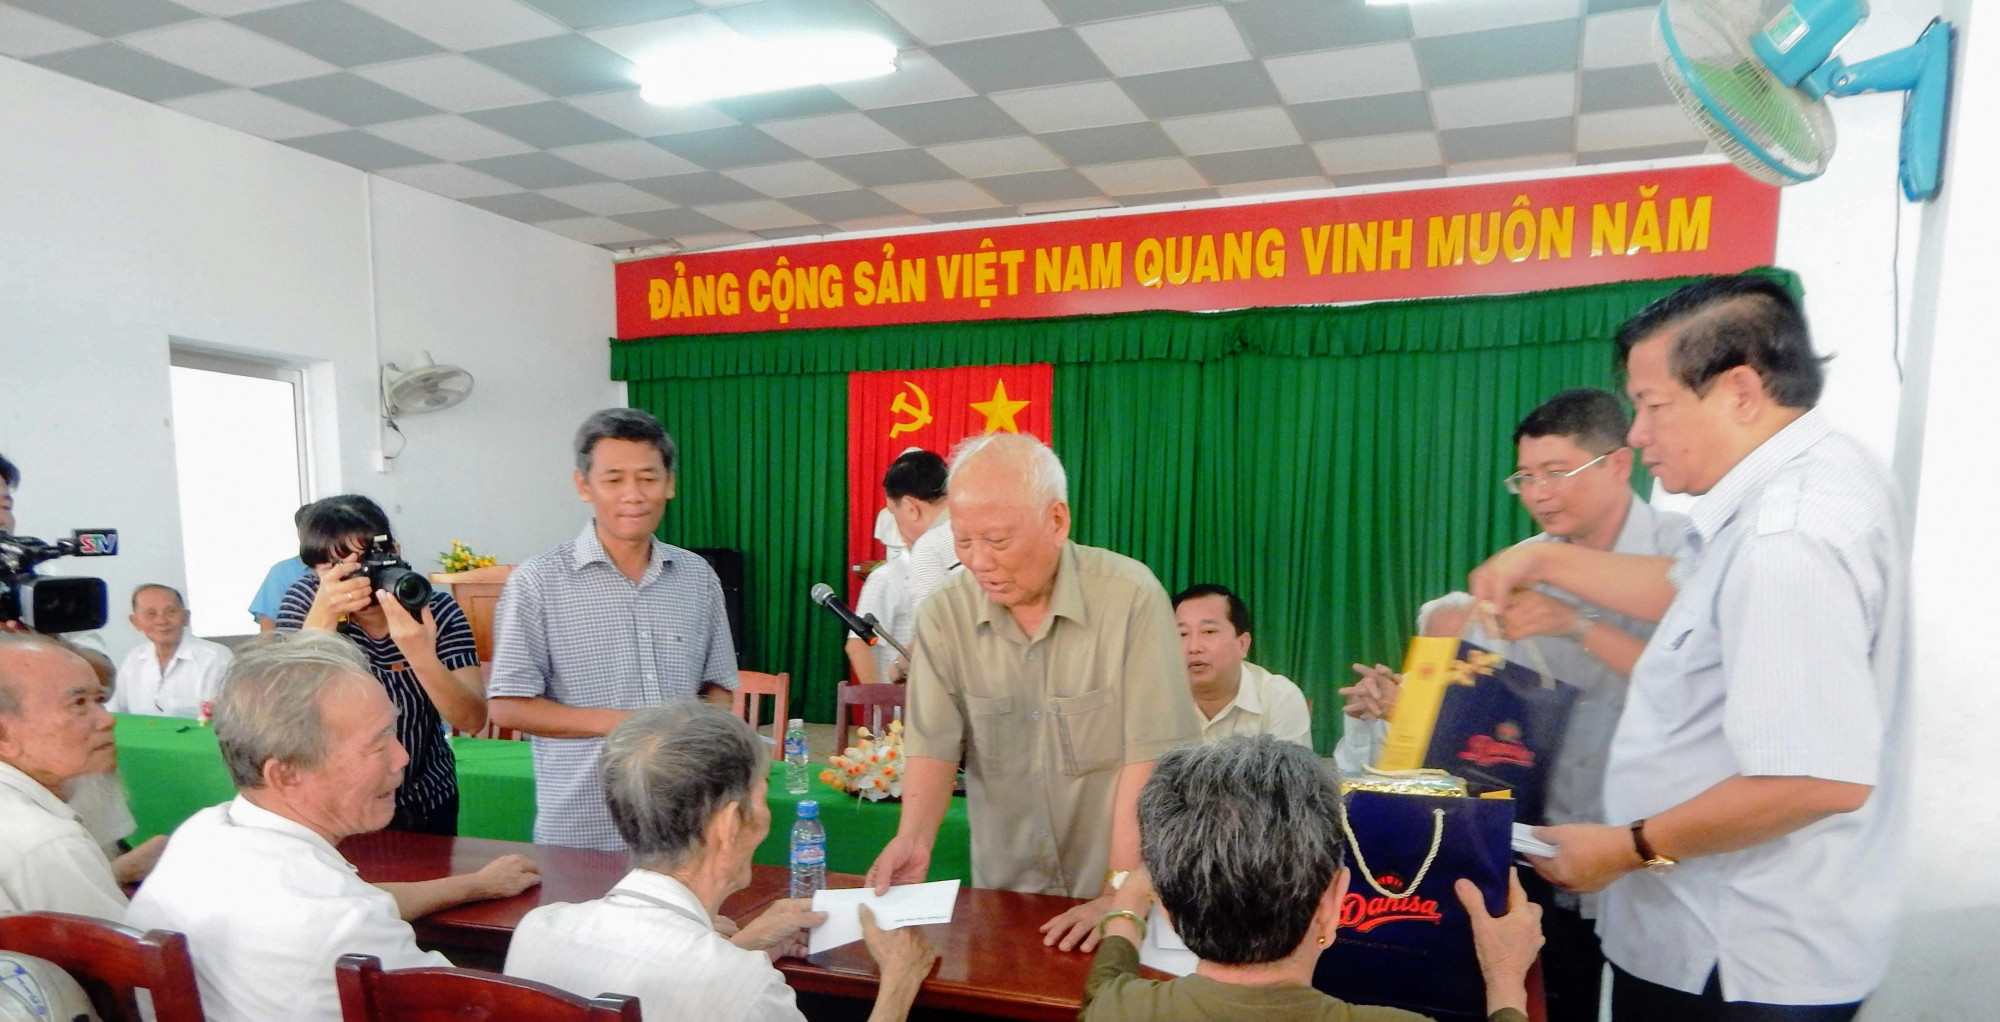 Ông Lê Phước Thọ (đứng thứ 3 từ phải vào) trong lần về thăm người dân vùng căn cứ xã Mỹ Phước (huyện Mỹ Tú, tỉnh Sóc Trăng) vào năm 2017. Ảnh: Vũ Thống Nhất